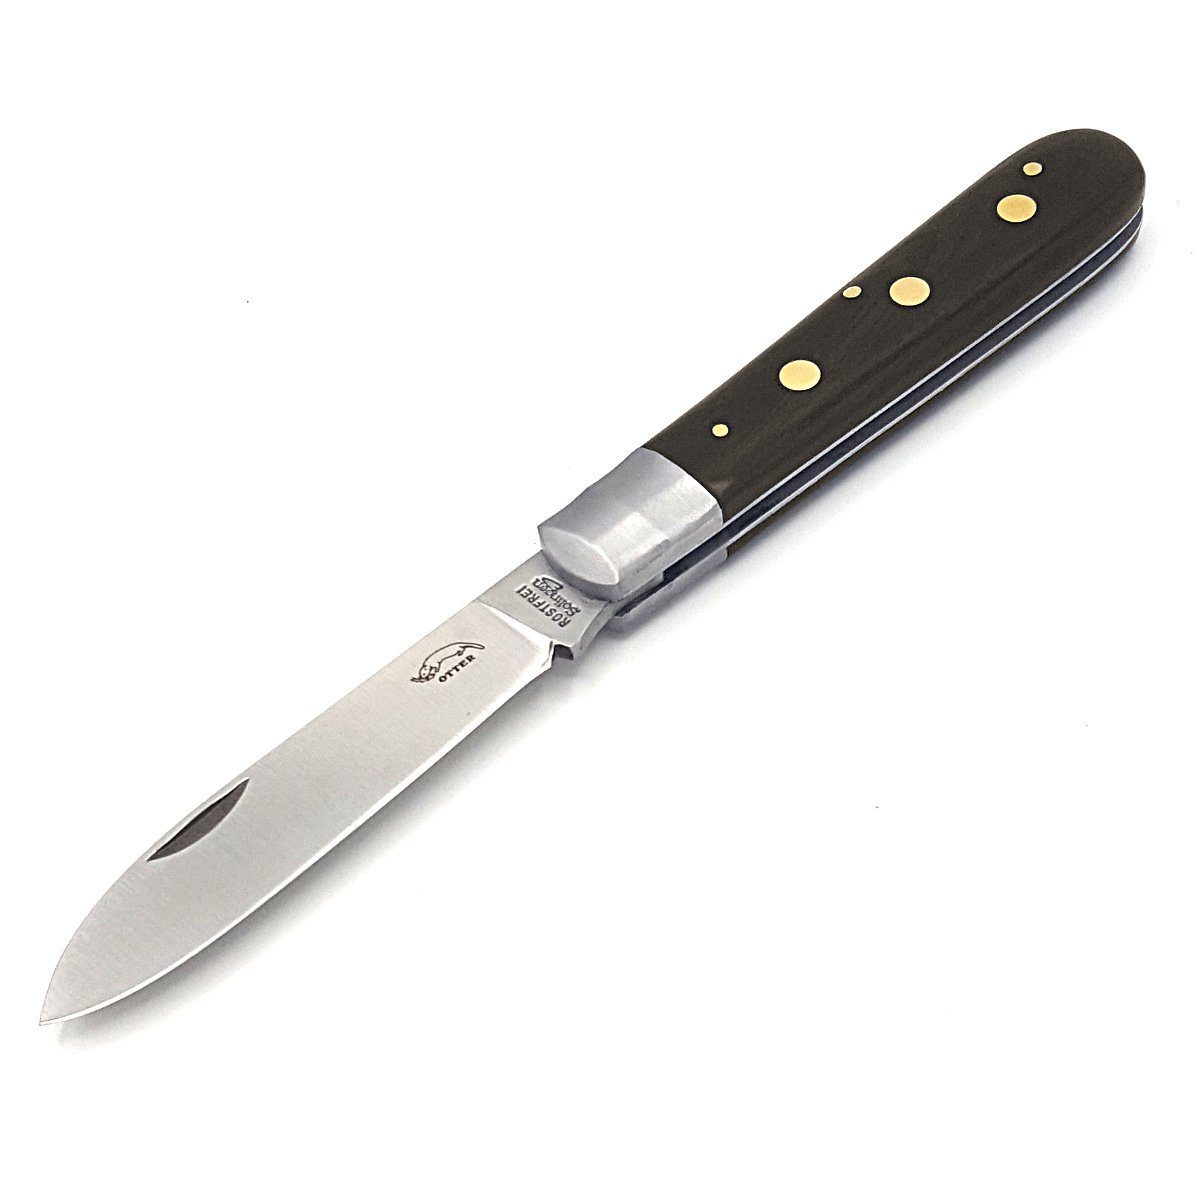 Otter Messer rostfrei, Drei-Nieten-Messer Klinge Messingnieten, Slipjoint Grenadill Taschenmesser